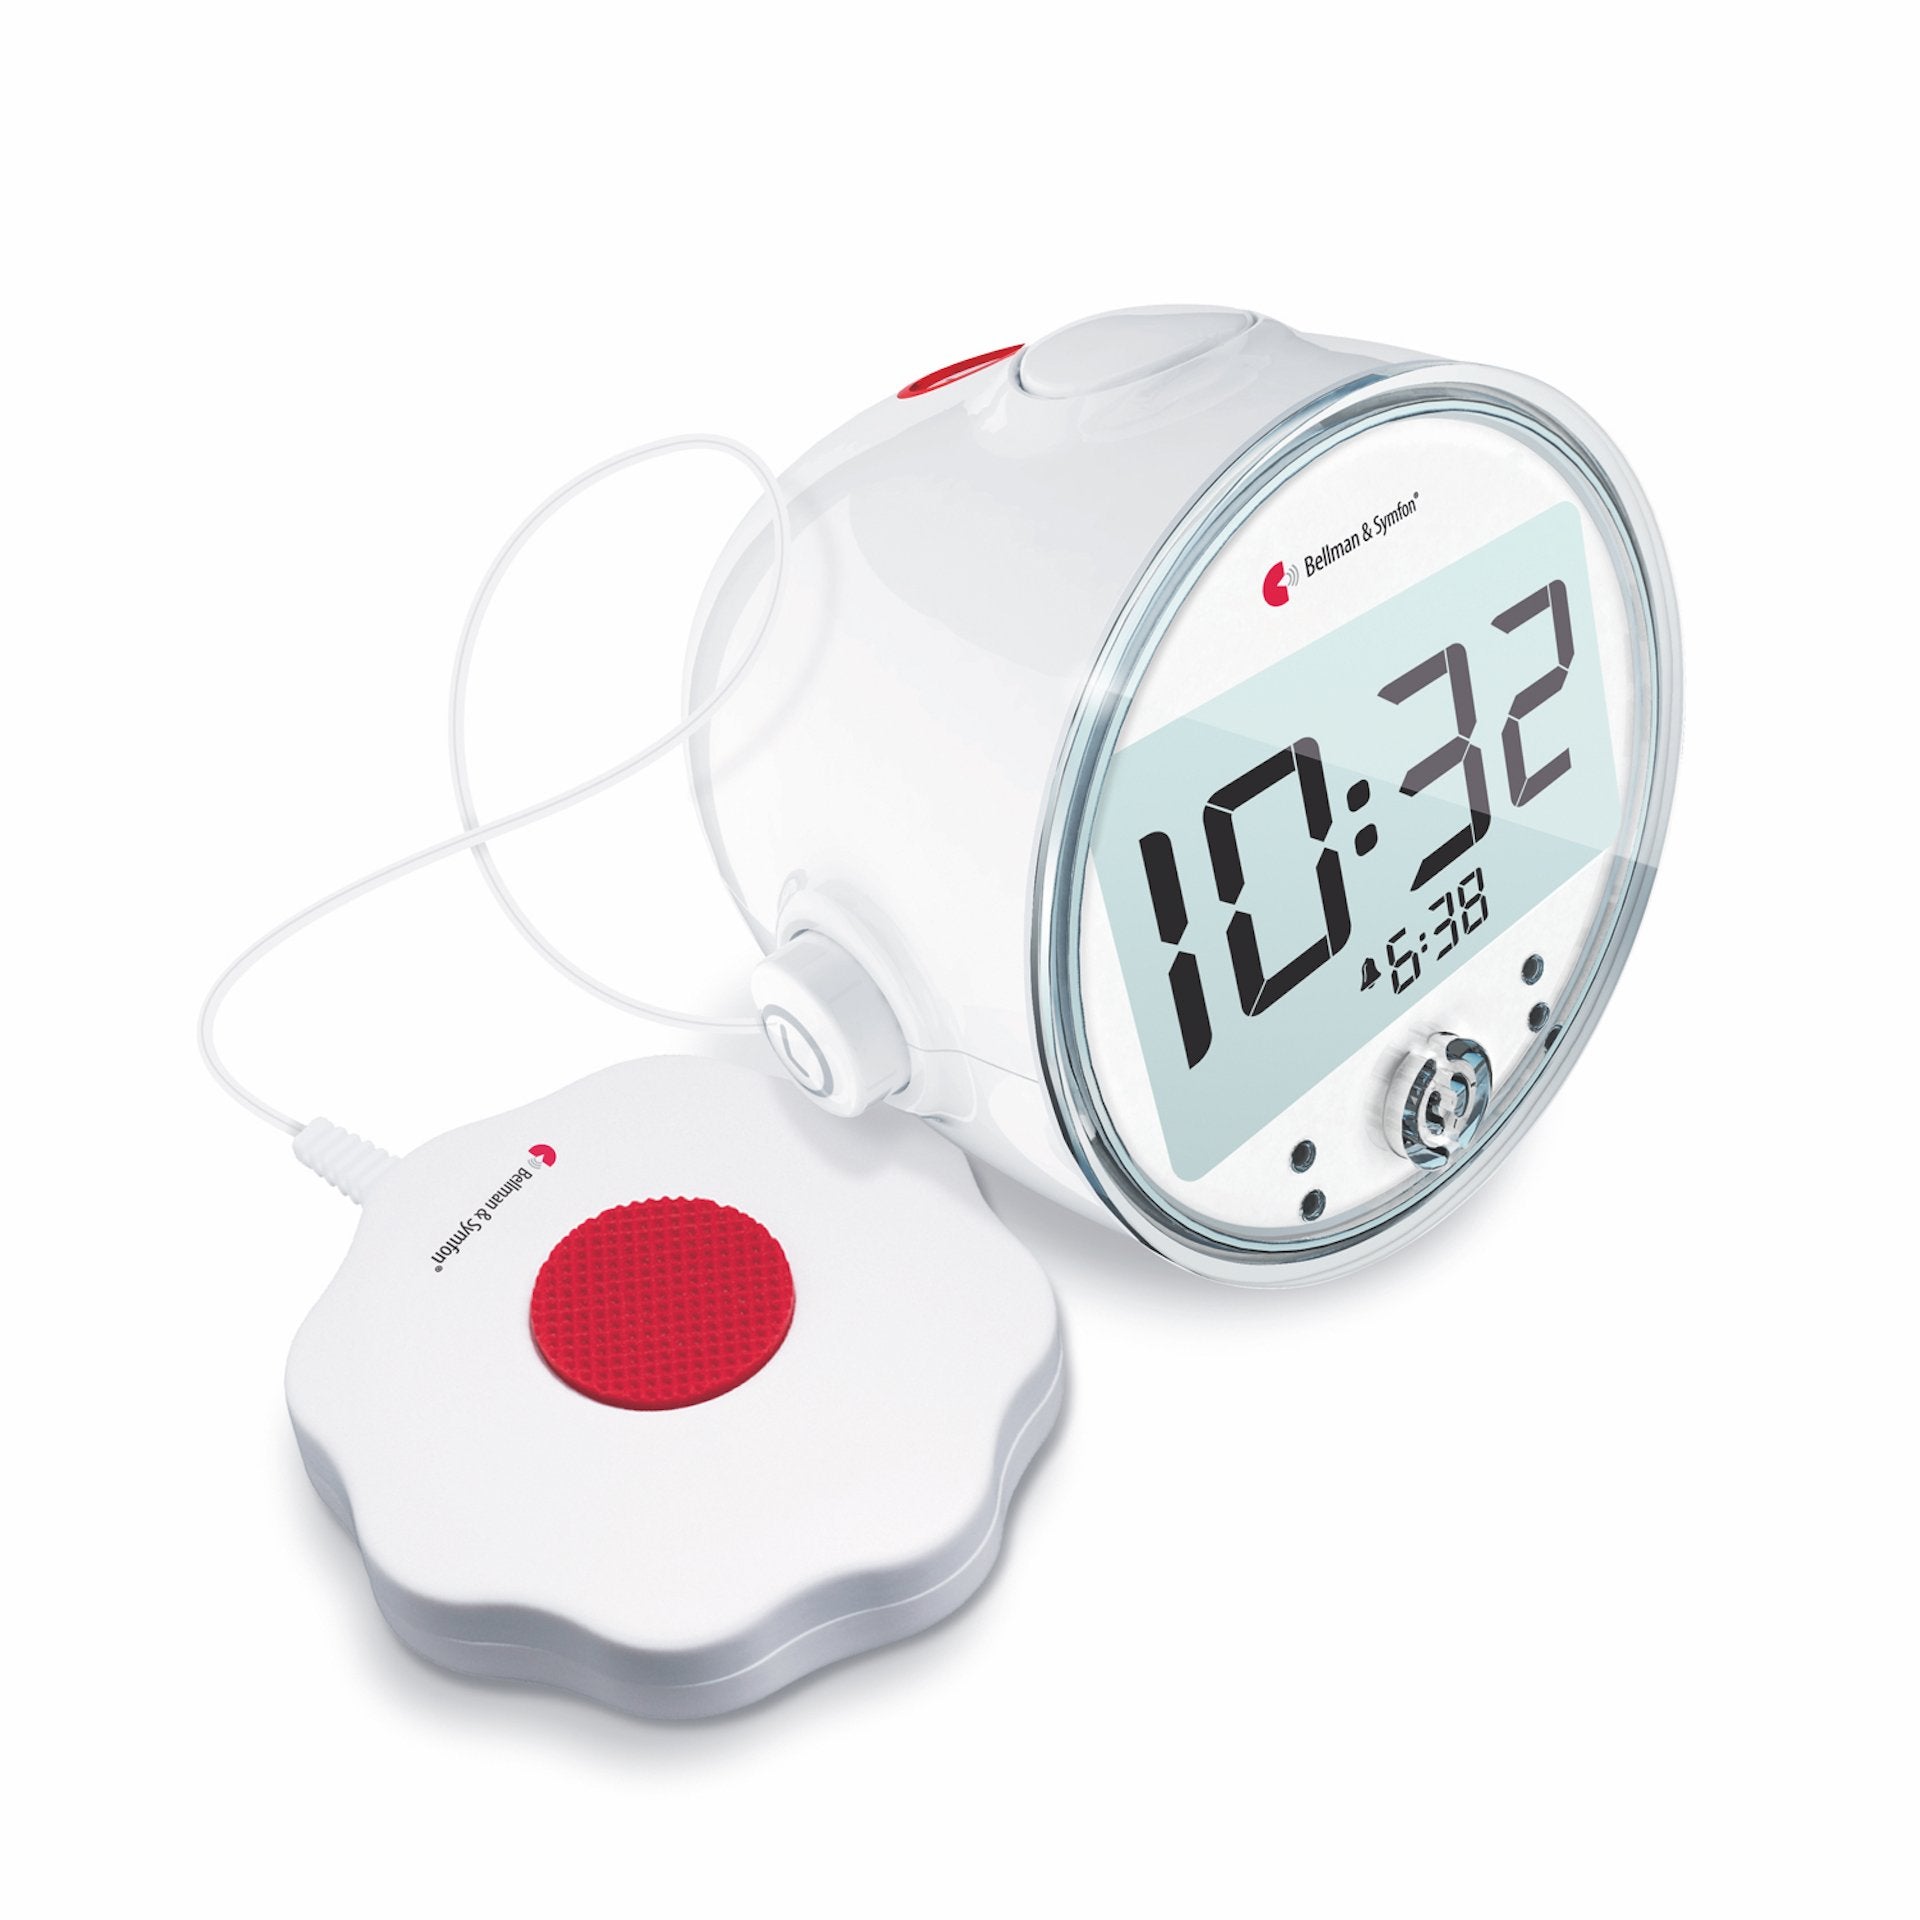 Bellman & Symfon Wecker/Alarm Clock Pro - Hörgeräte Direkt